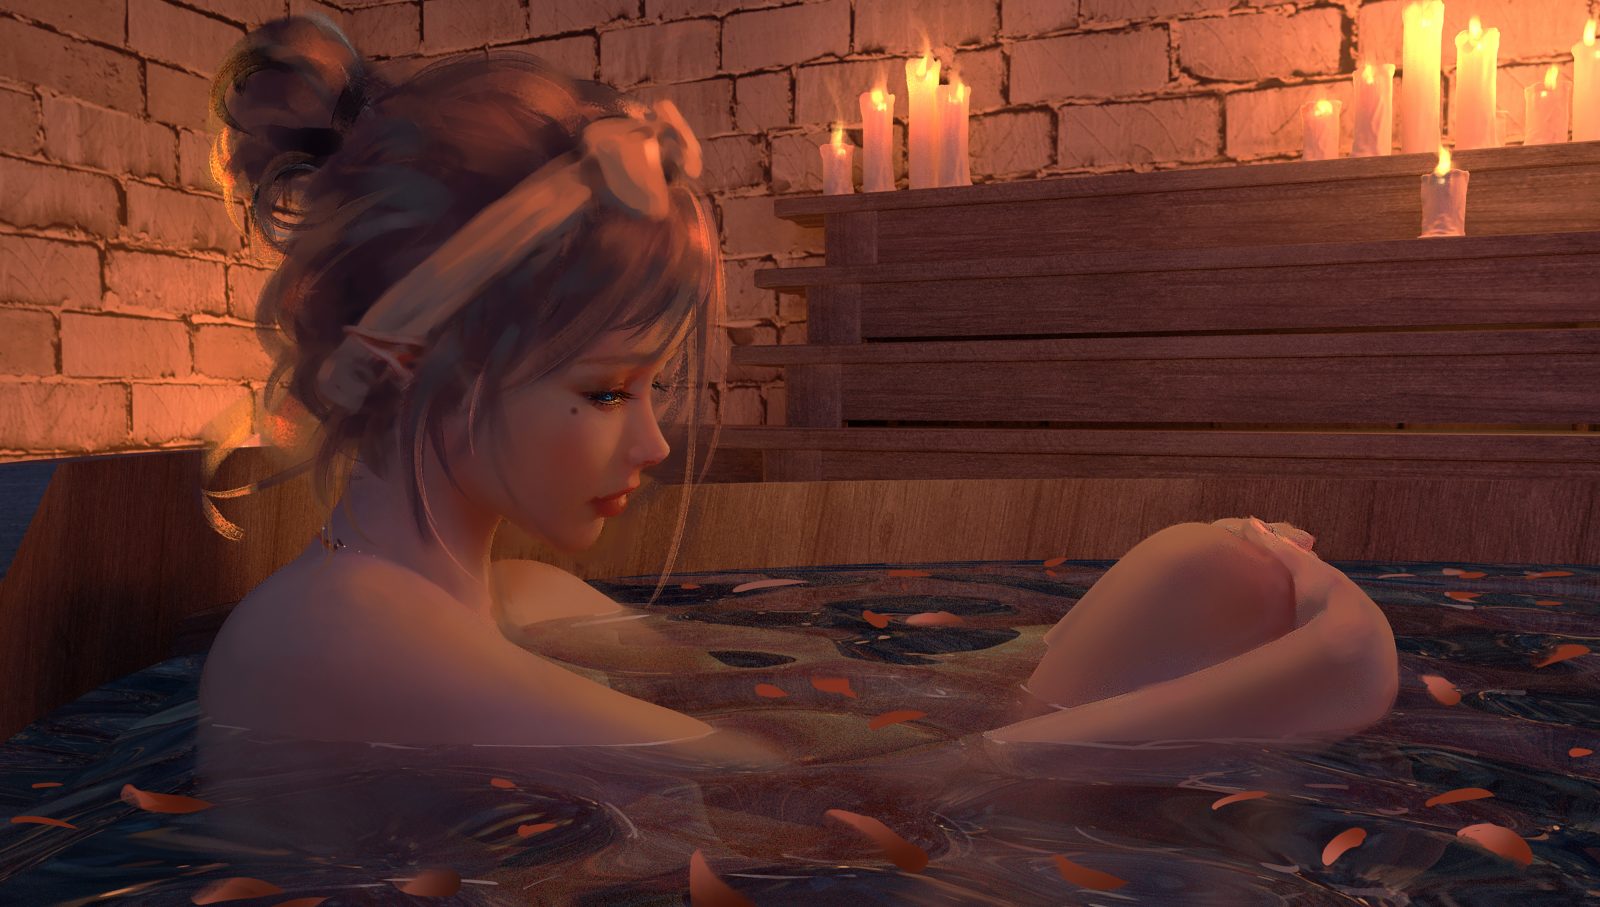 4000×2267 WLOP 作品系列：动漫美女在浴缸中泡澡 电脑壁纸